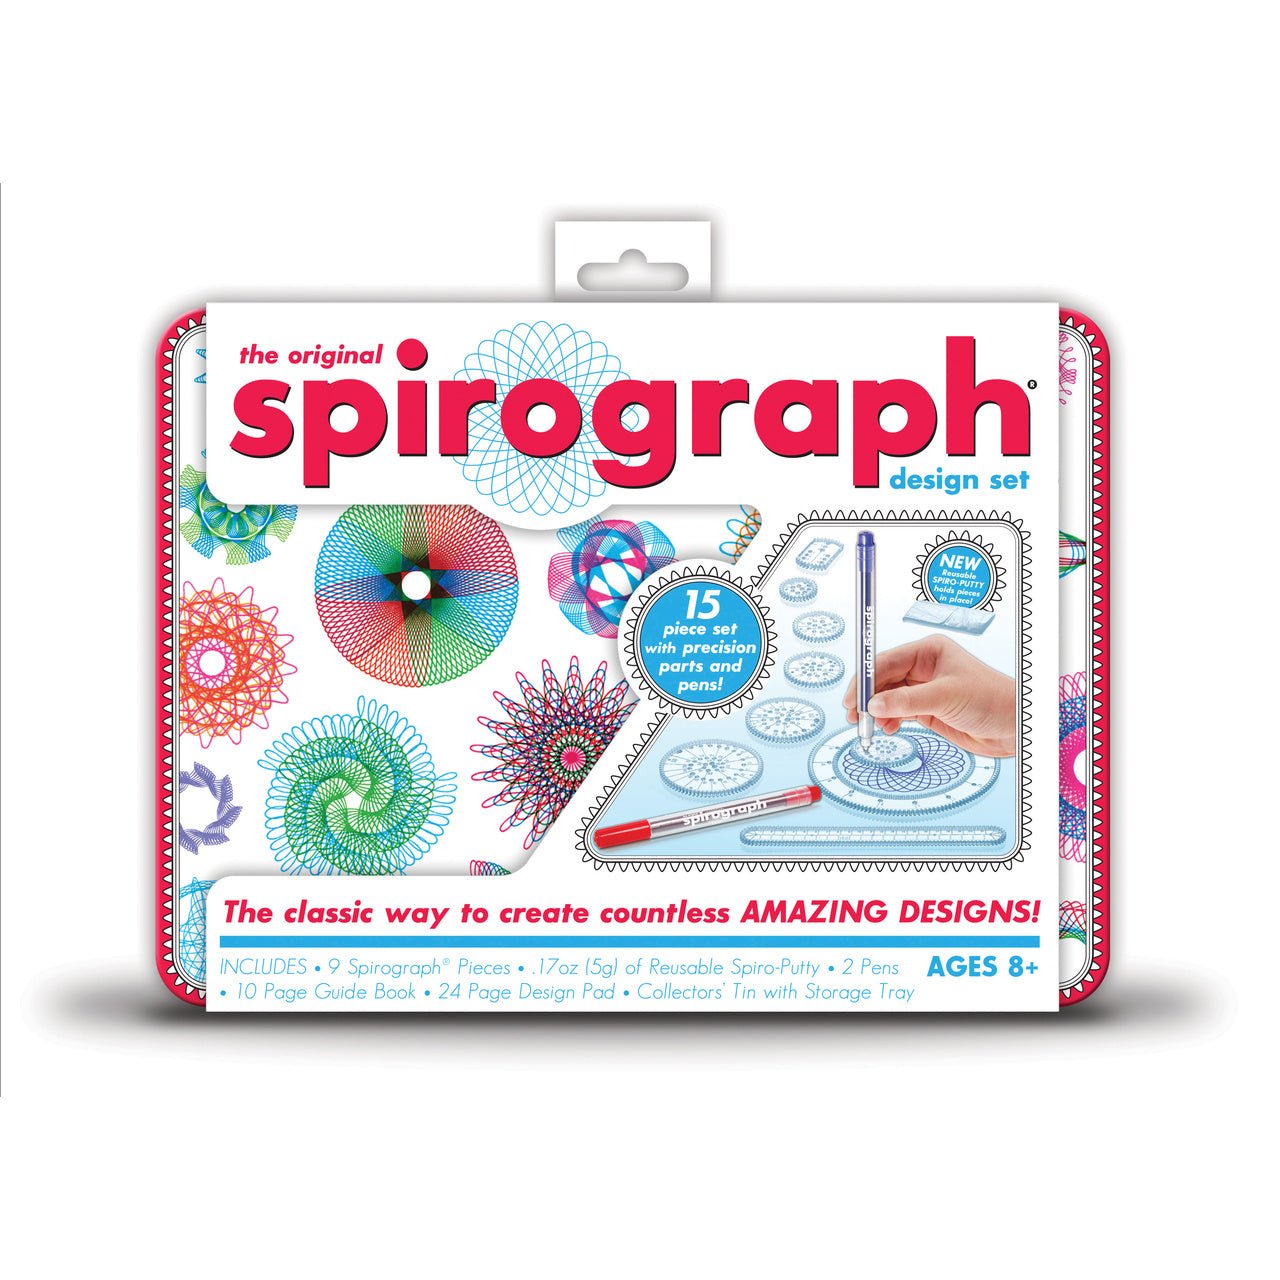 The Original Spirograph design set - merriartist.com